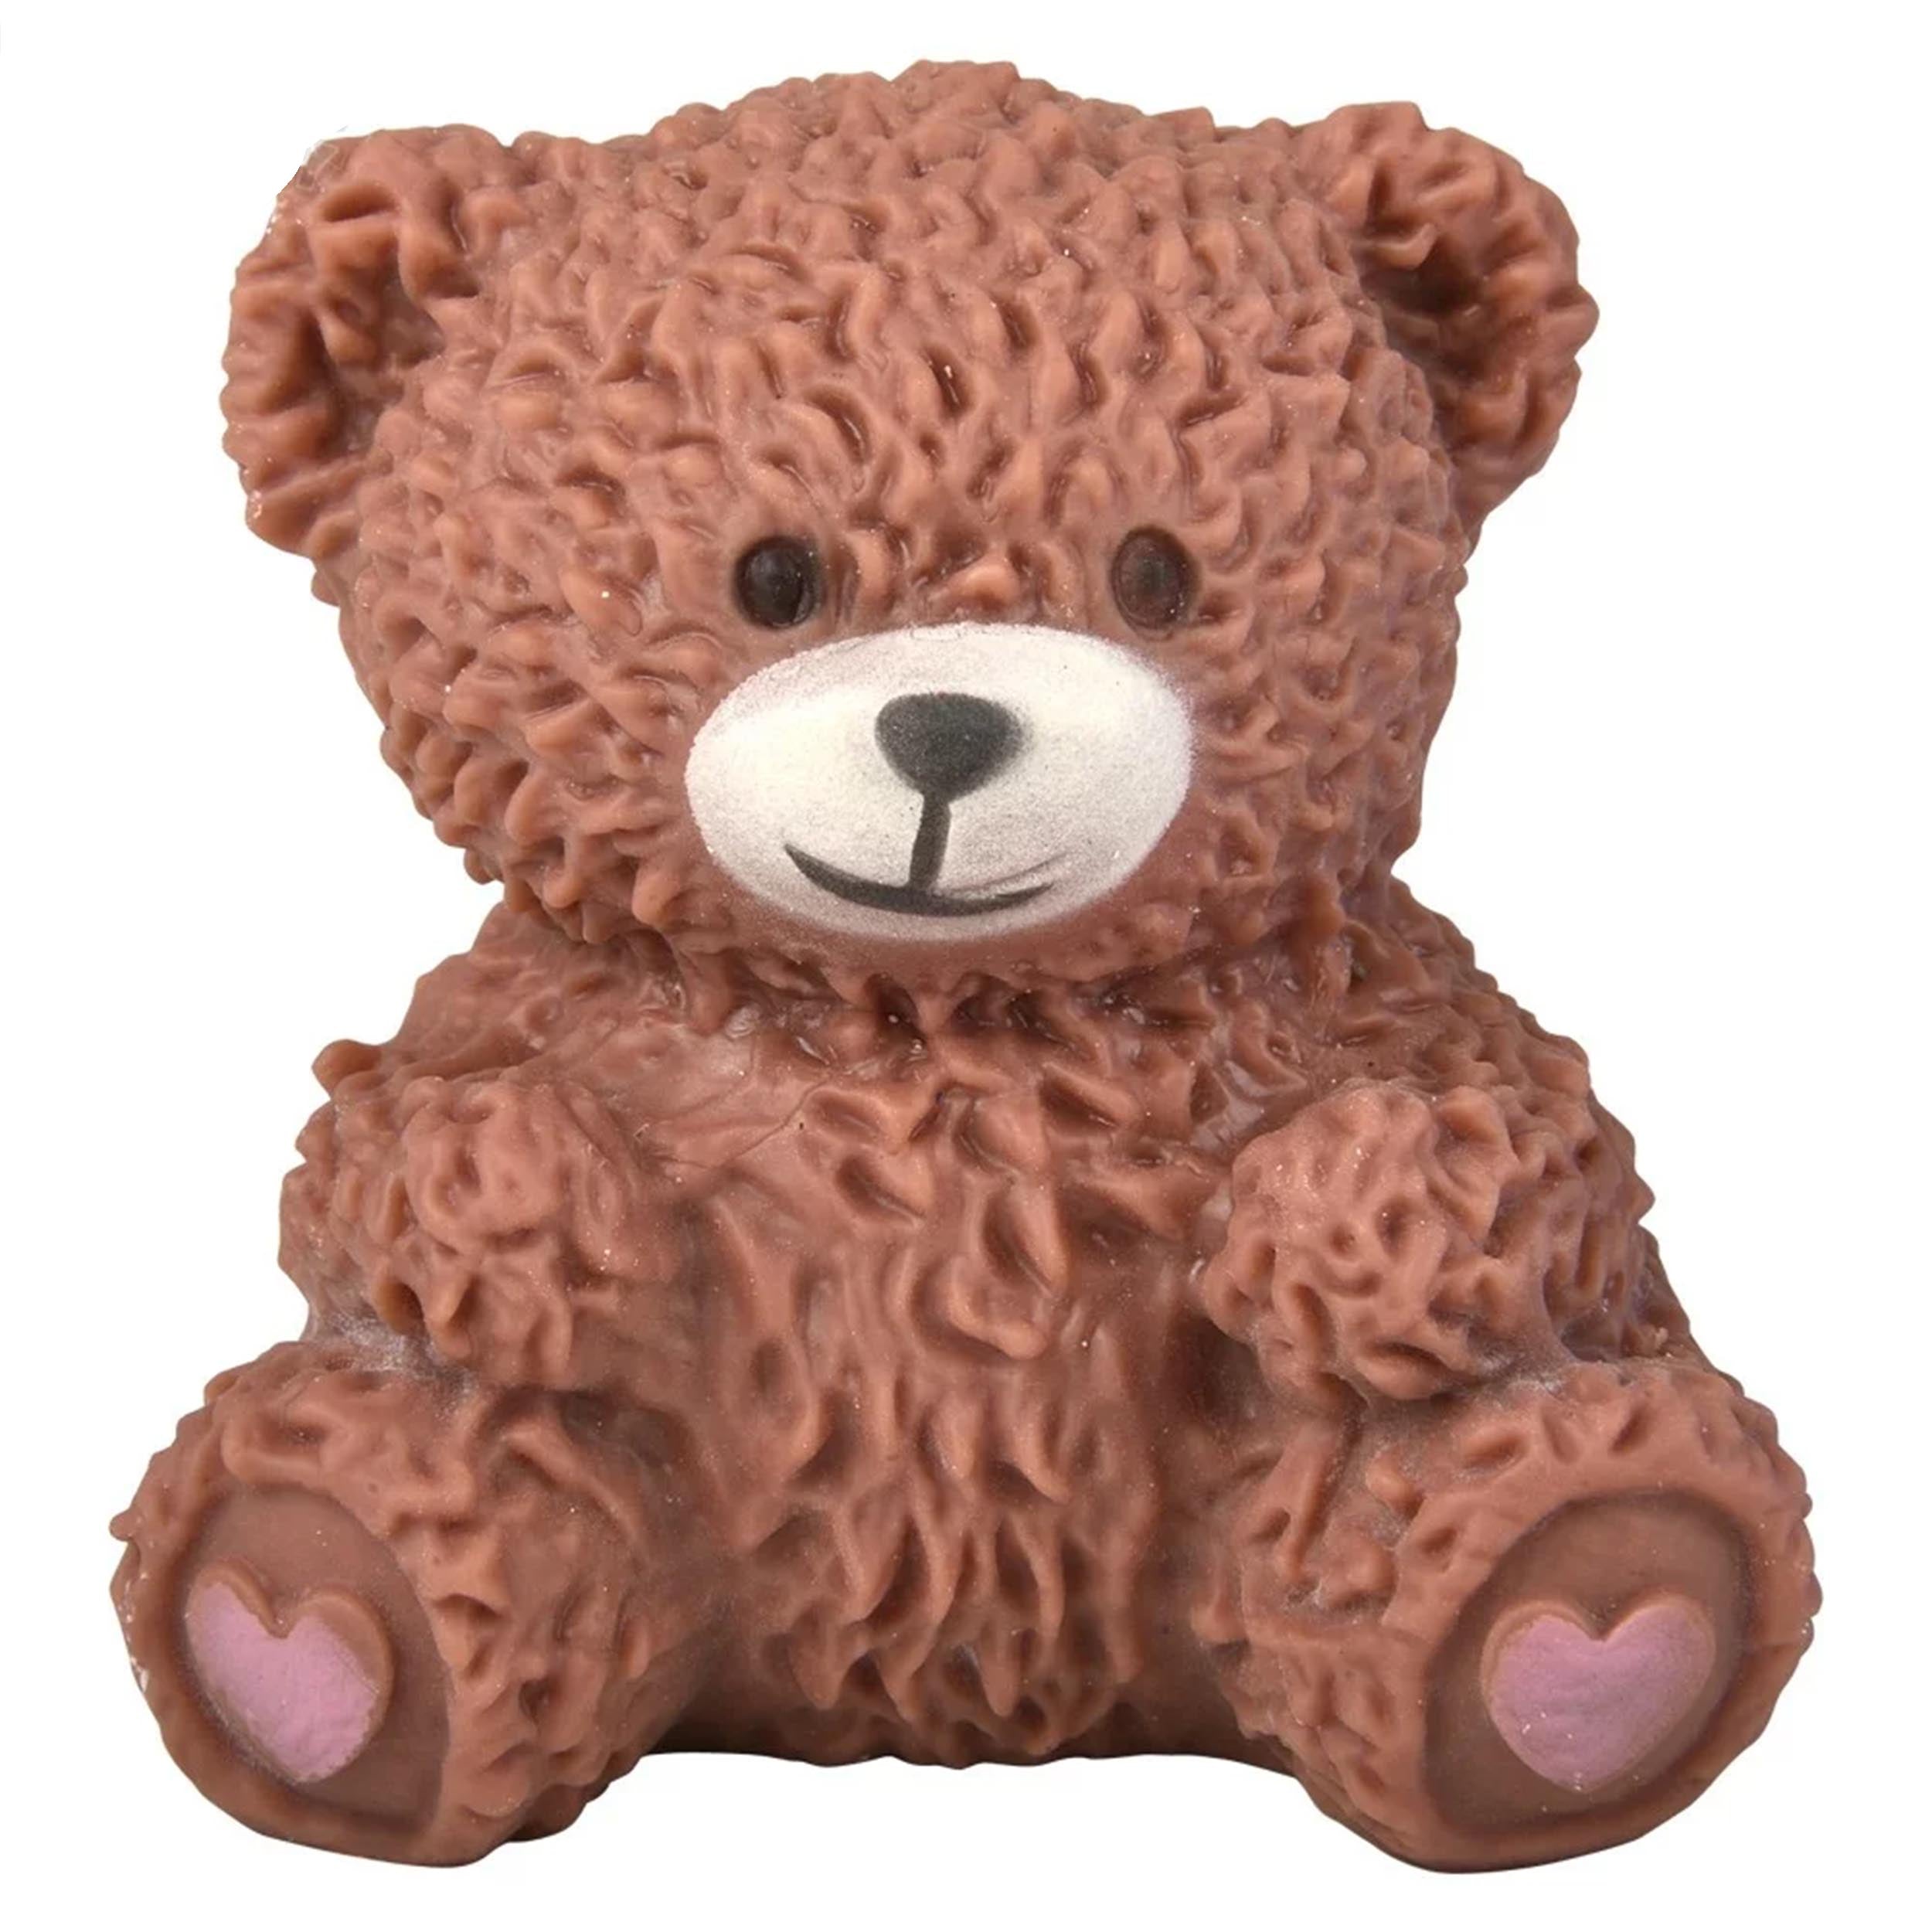 hver dag Selvforkælelse Ledelse Squish and Squeeze Teddy Bear Assorted Colors – JSBlueRidge.com Wholesale